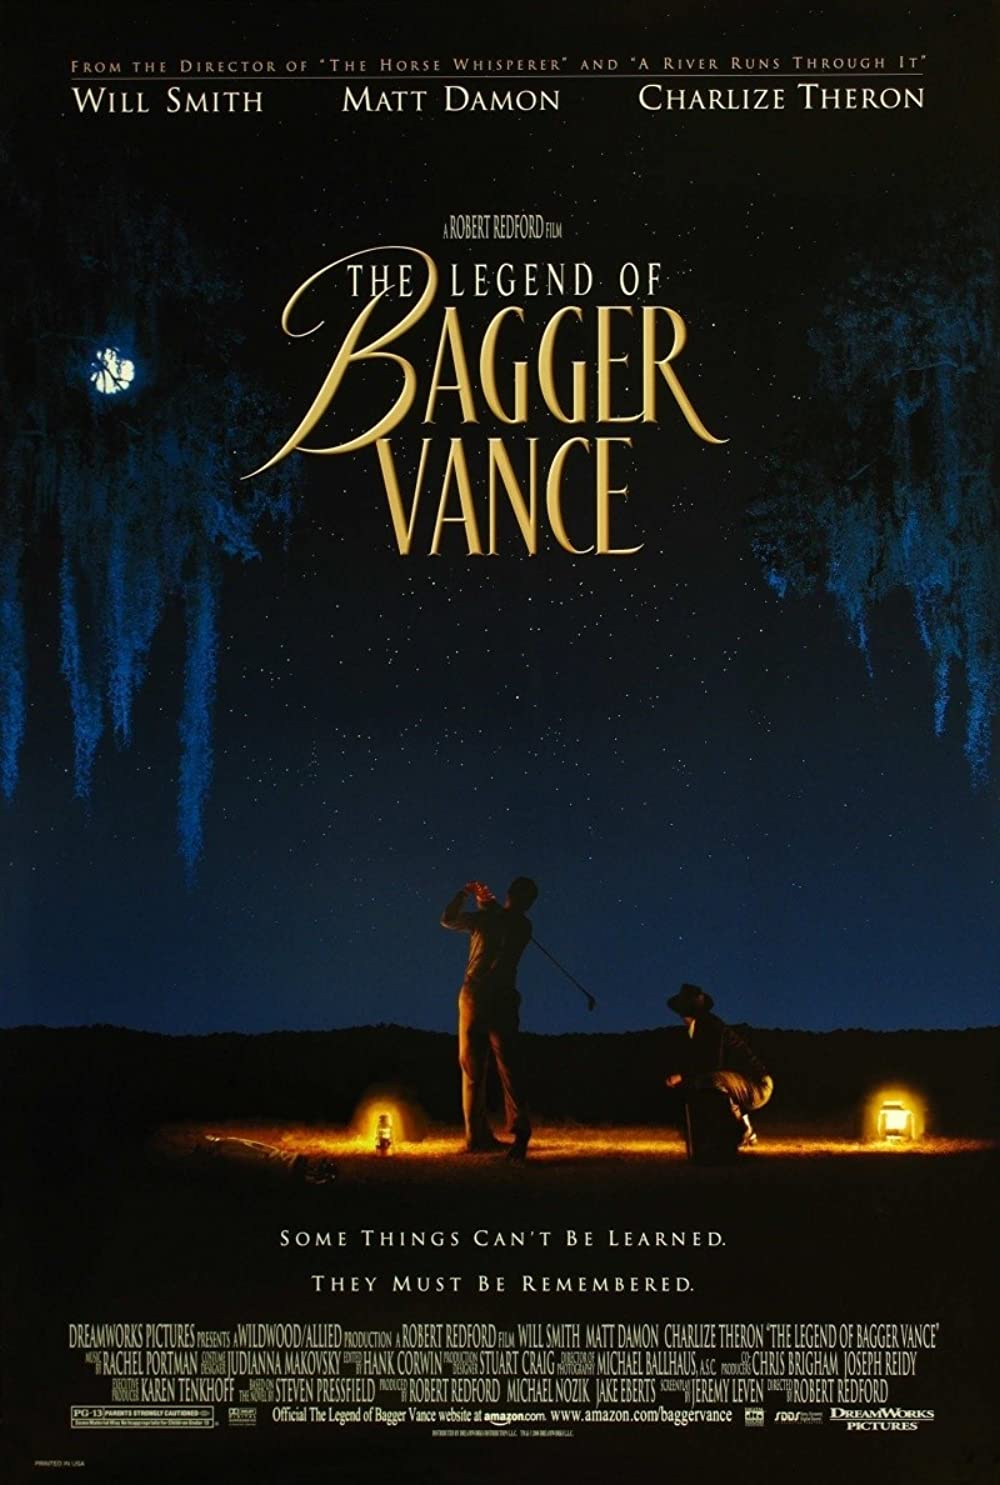 Filmbeschreibung zu The Legend of Bagger Vance